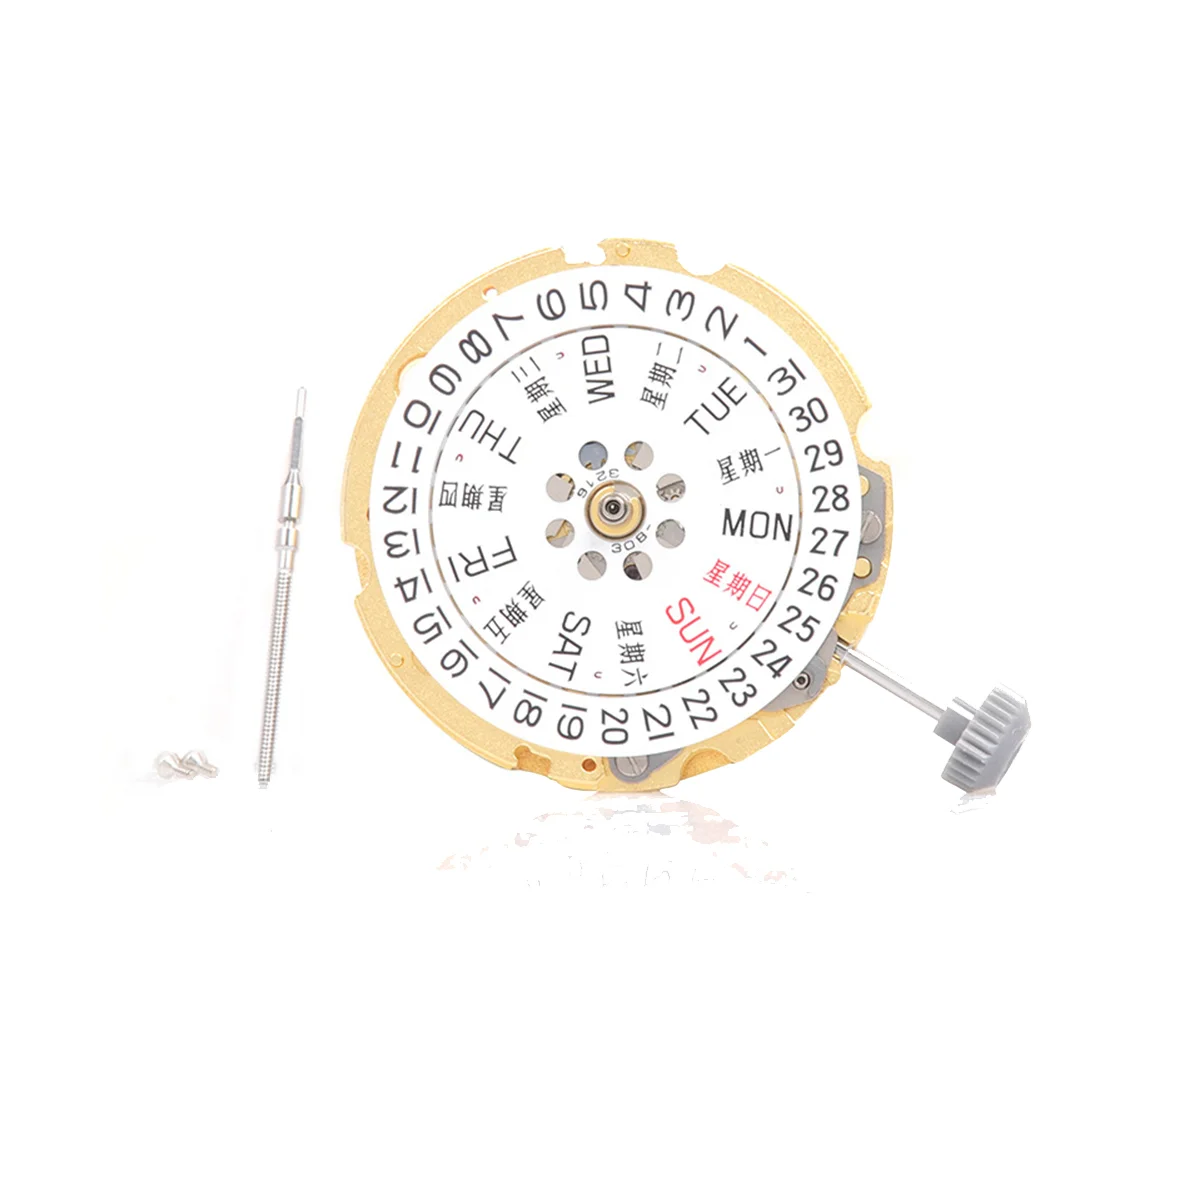 

Часы с механизмом драгоценностей 8200, автоматические механические золотые часы с двойным календарем, 21 механизм, аксессуары для ремонта часов